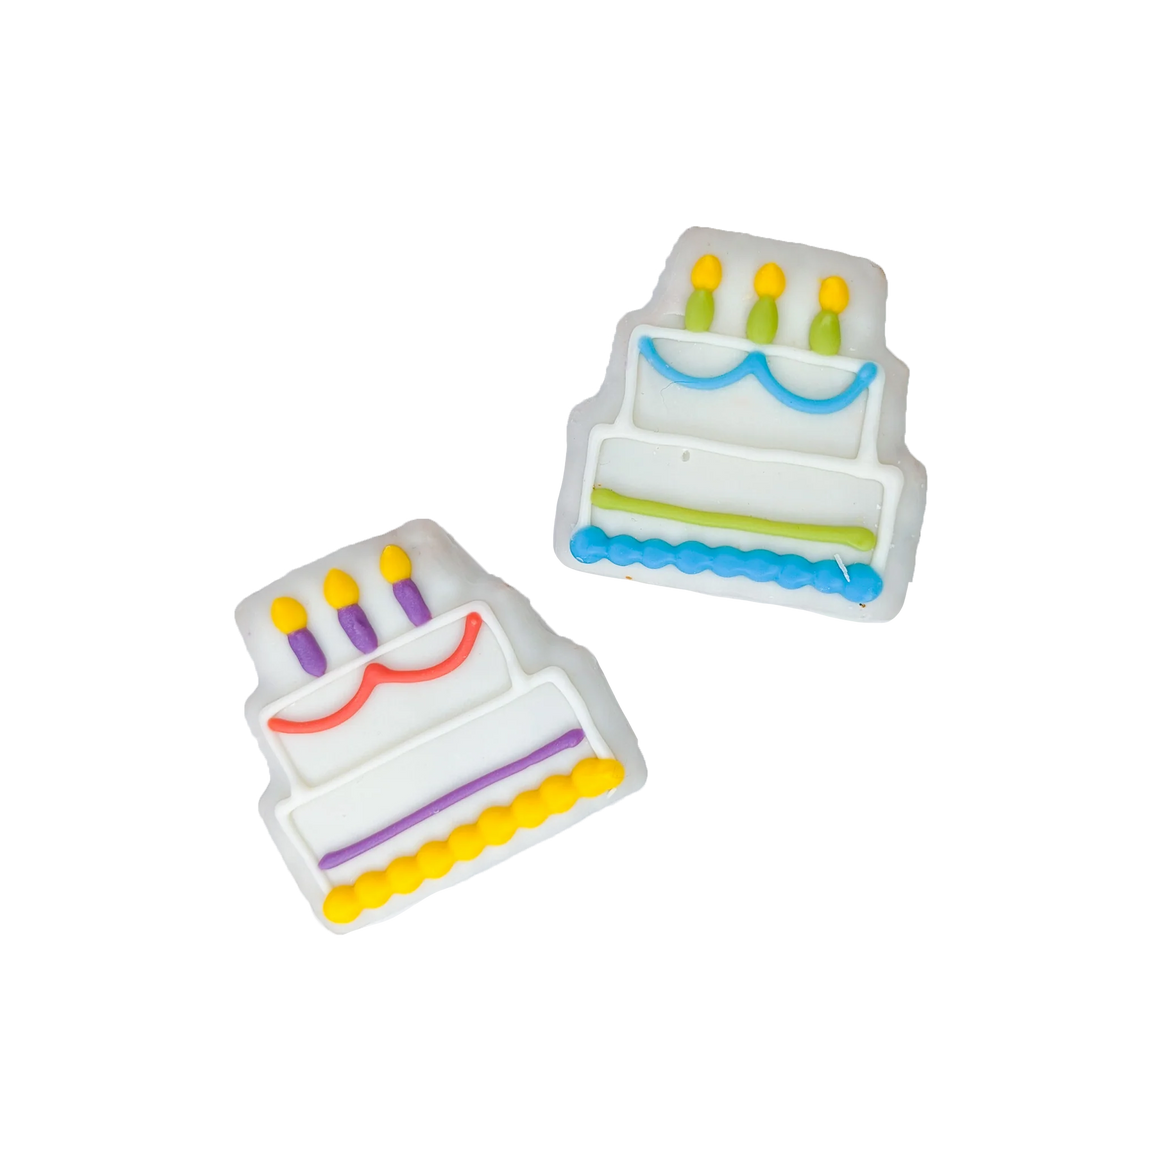 Three Tier Birthday Cake Cookie